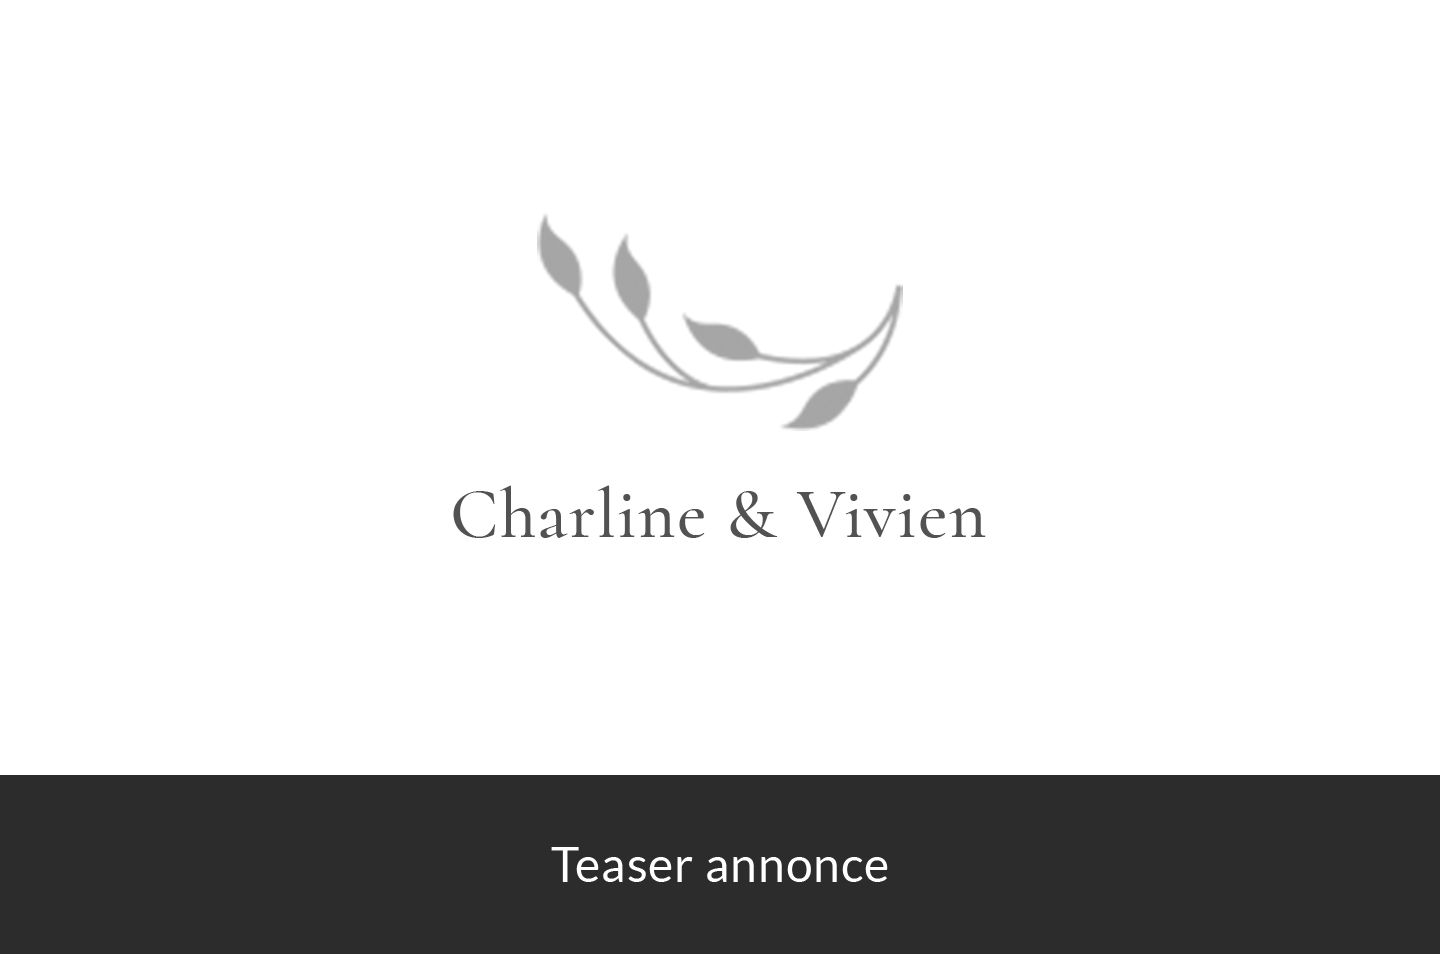 Charline & Vivien